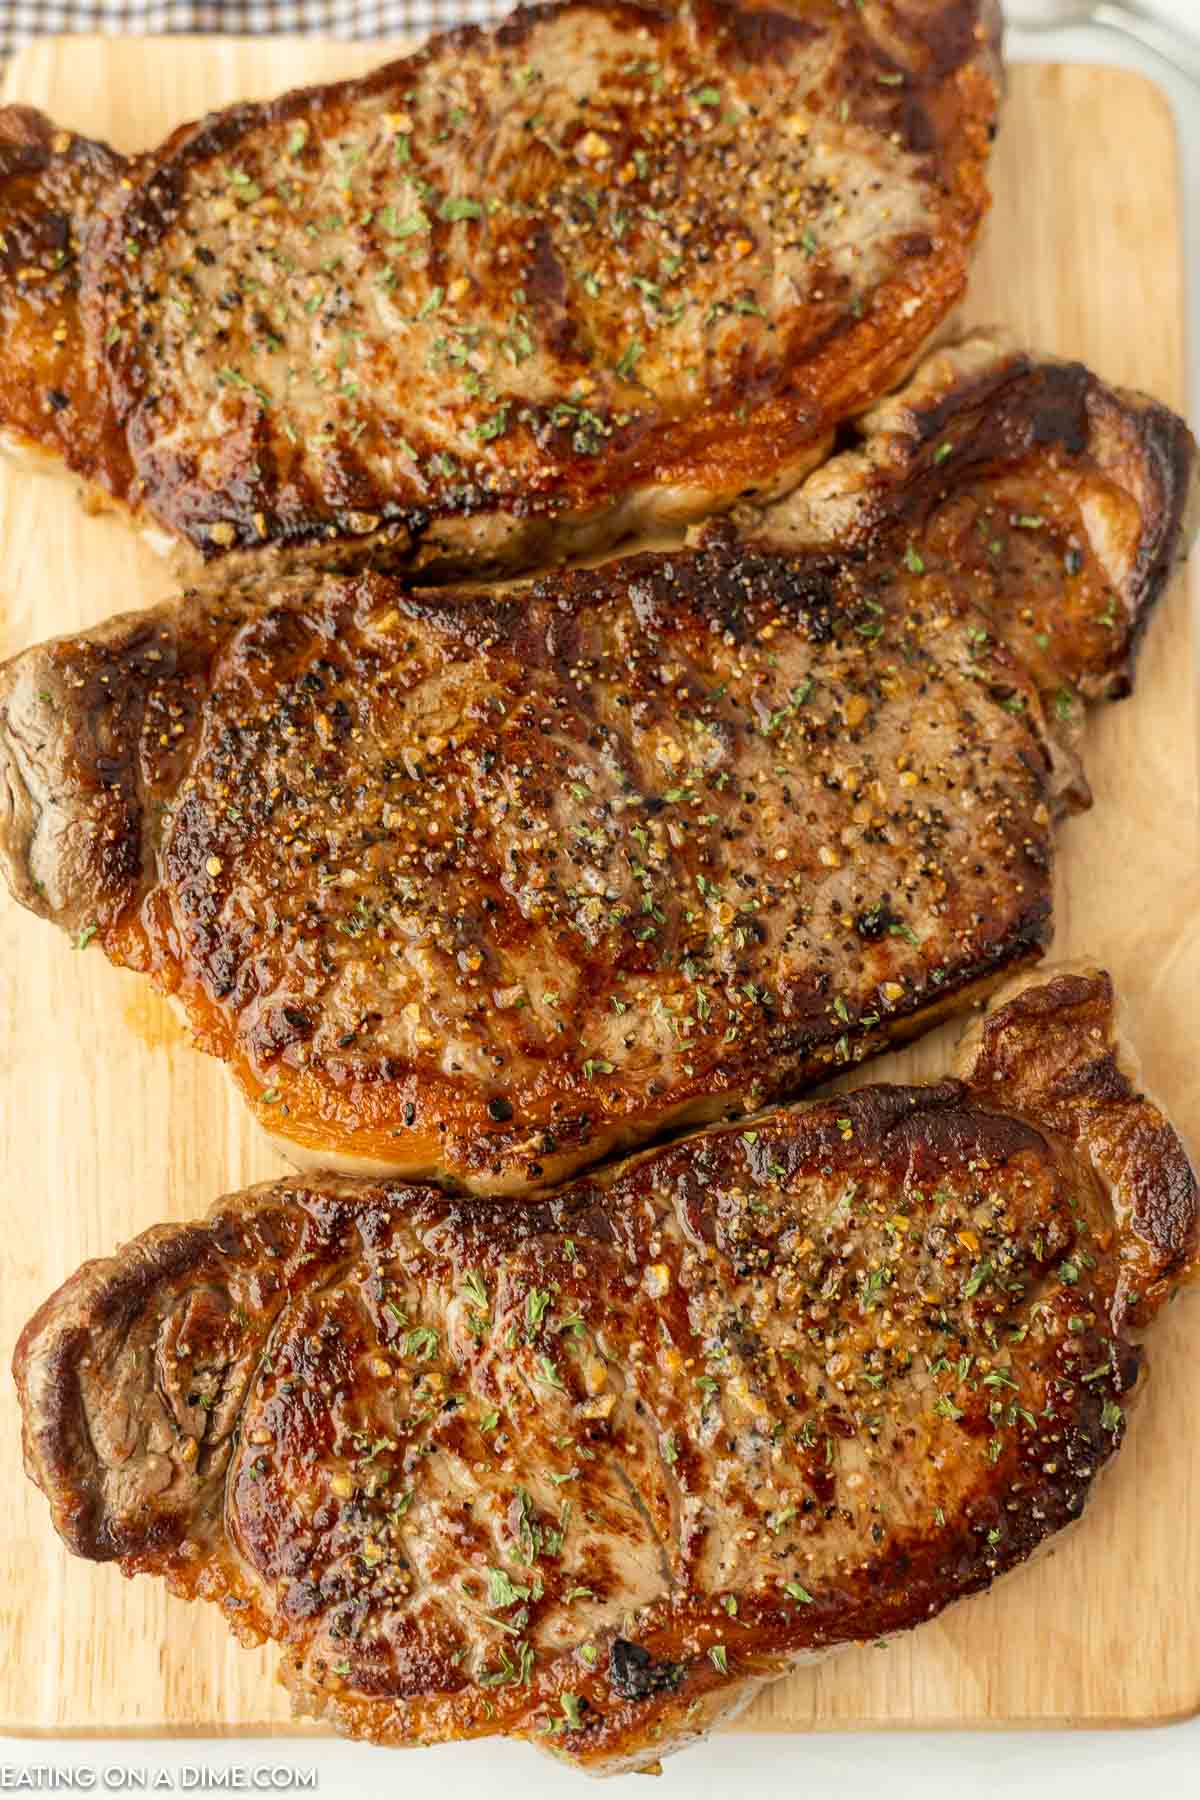 Blackstone Grill Steak - Blackstone Griddle steak recipe